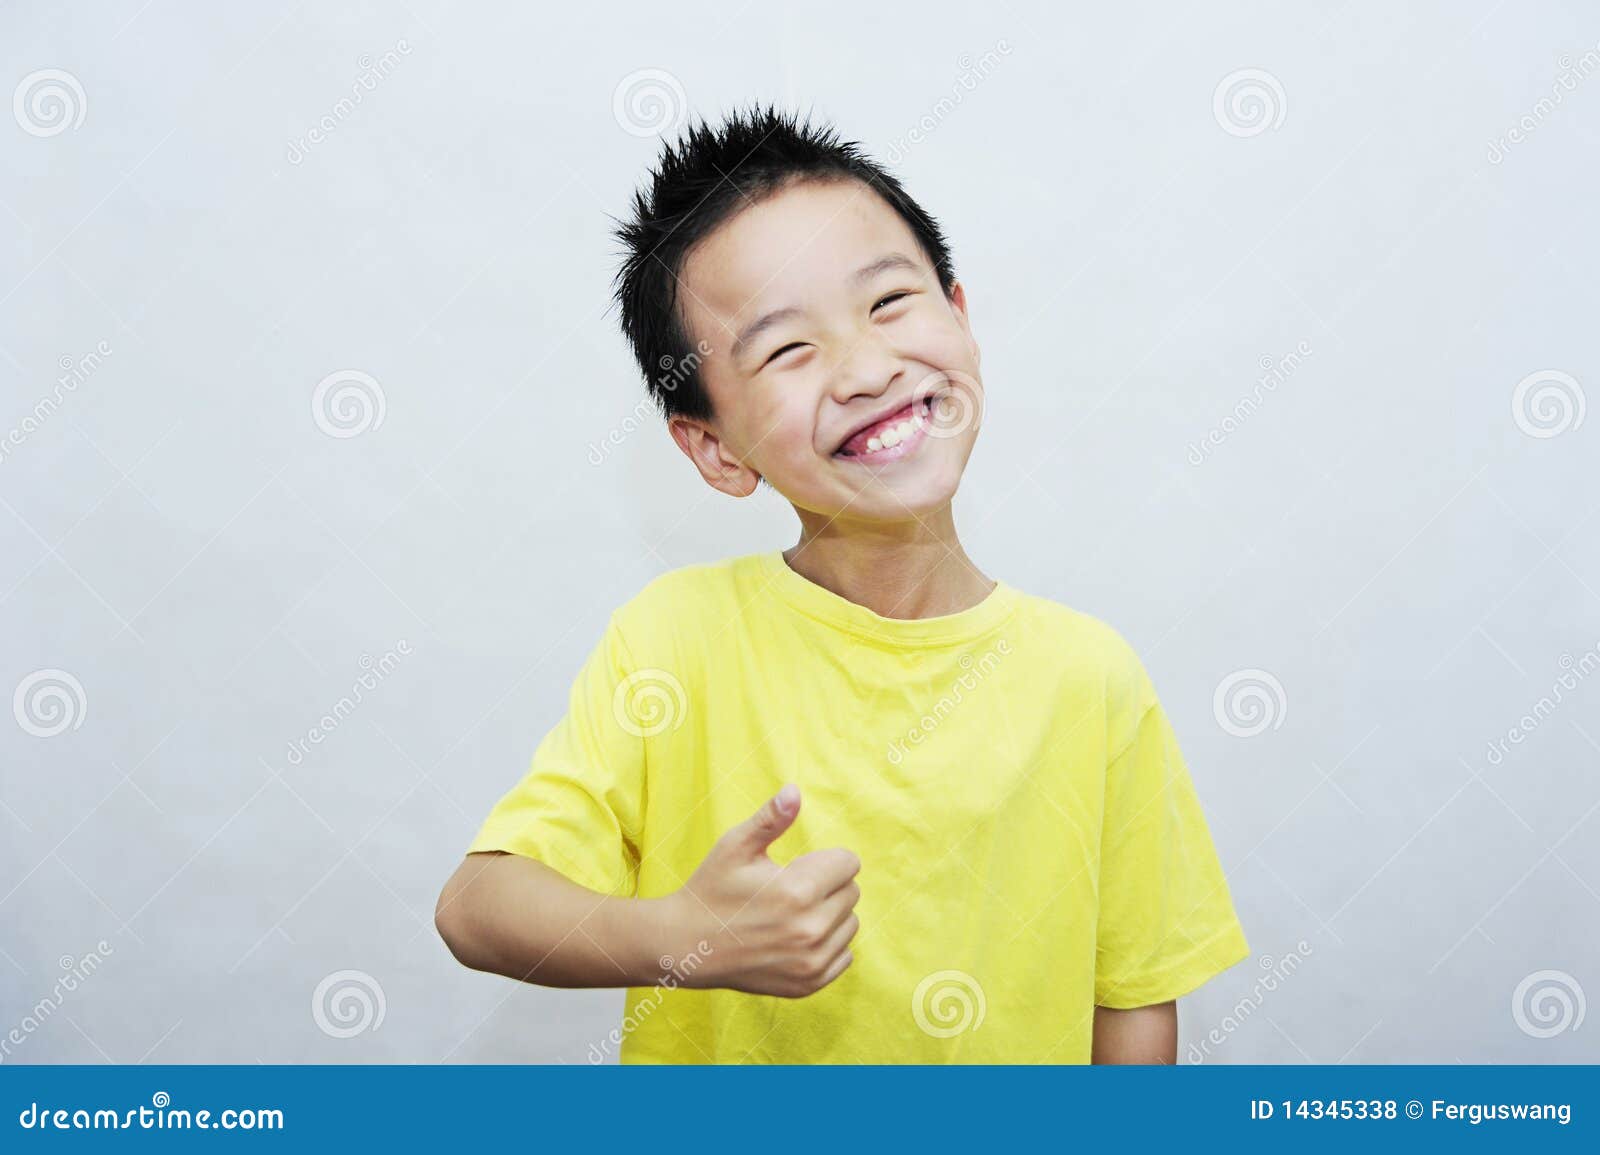 a child laugh